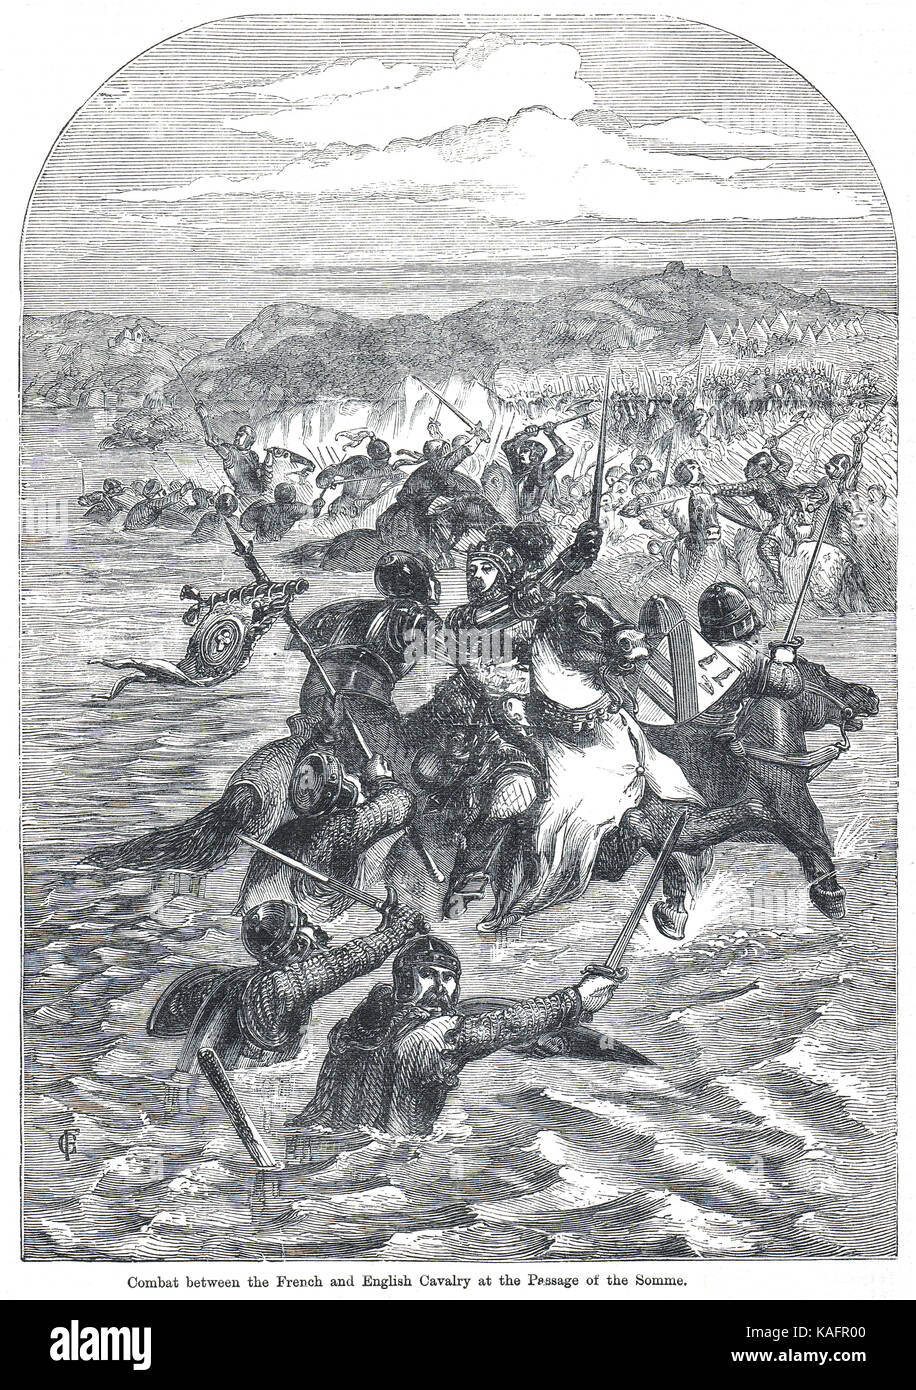 Schlacht von Blanchetaque, 24. August 1346, Englische Kavallerie von Edward III, Furt des Flusses Somme Stockfoto